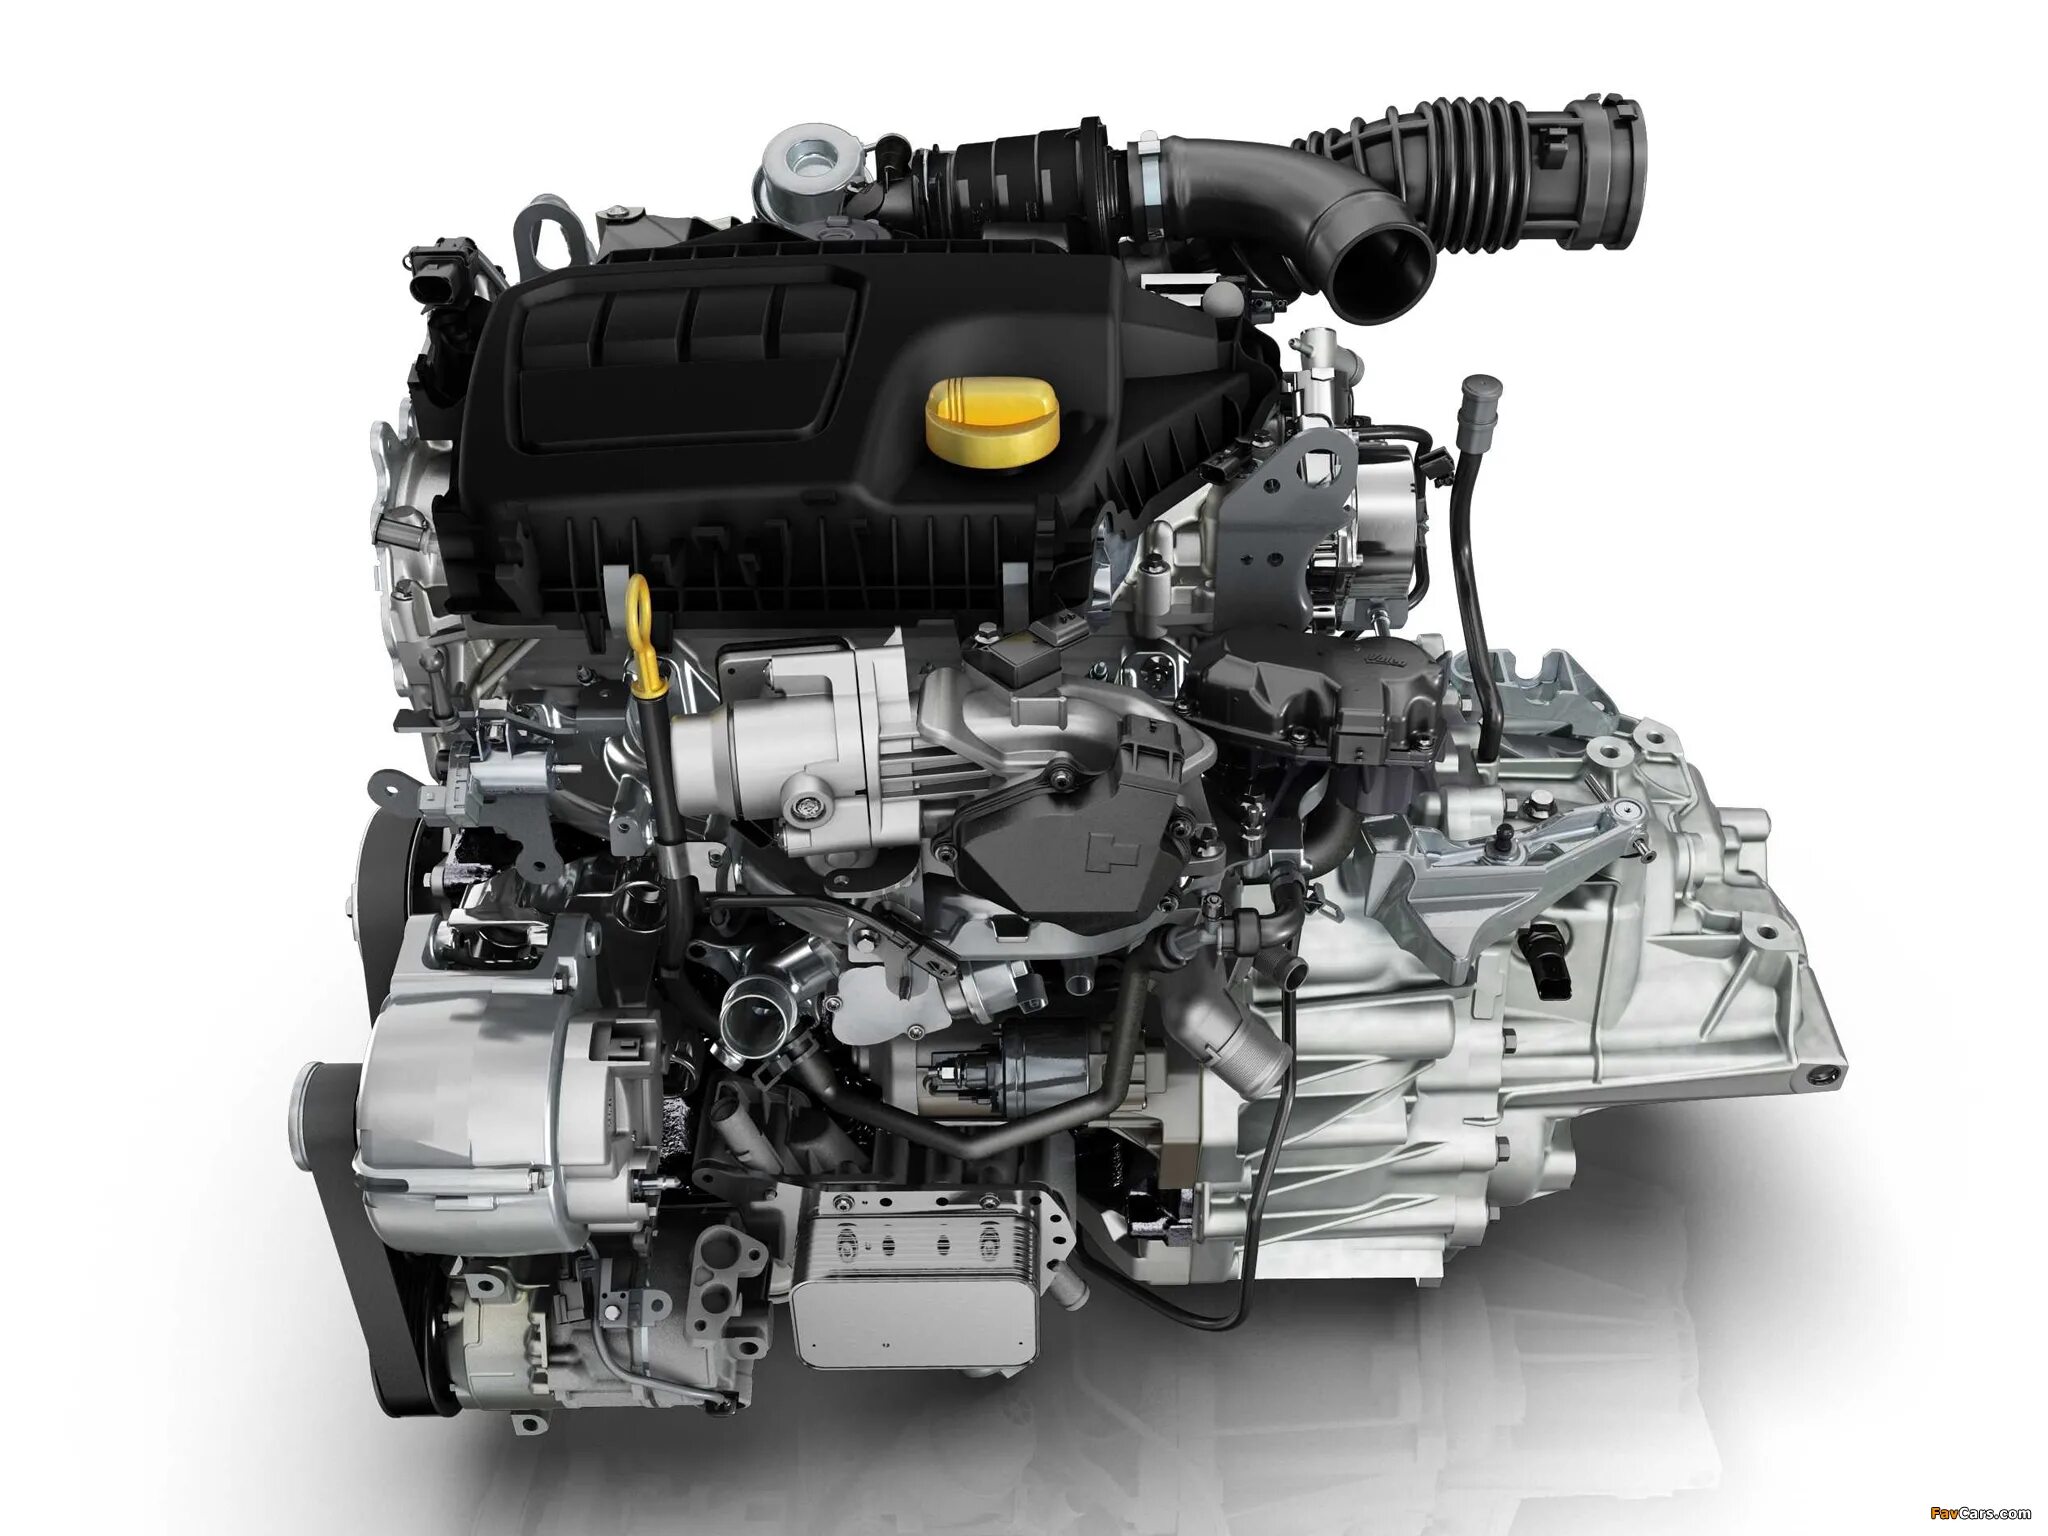 Двигатель рено 1.5 дизель купить. R9m 1.6 DCI 130л.с. Renault r9m 1.6 DCI. Nissan x-Trail двигатель m9r. R9m 1.6 DCI дизельный турбированный 130.